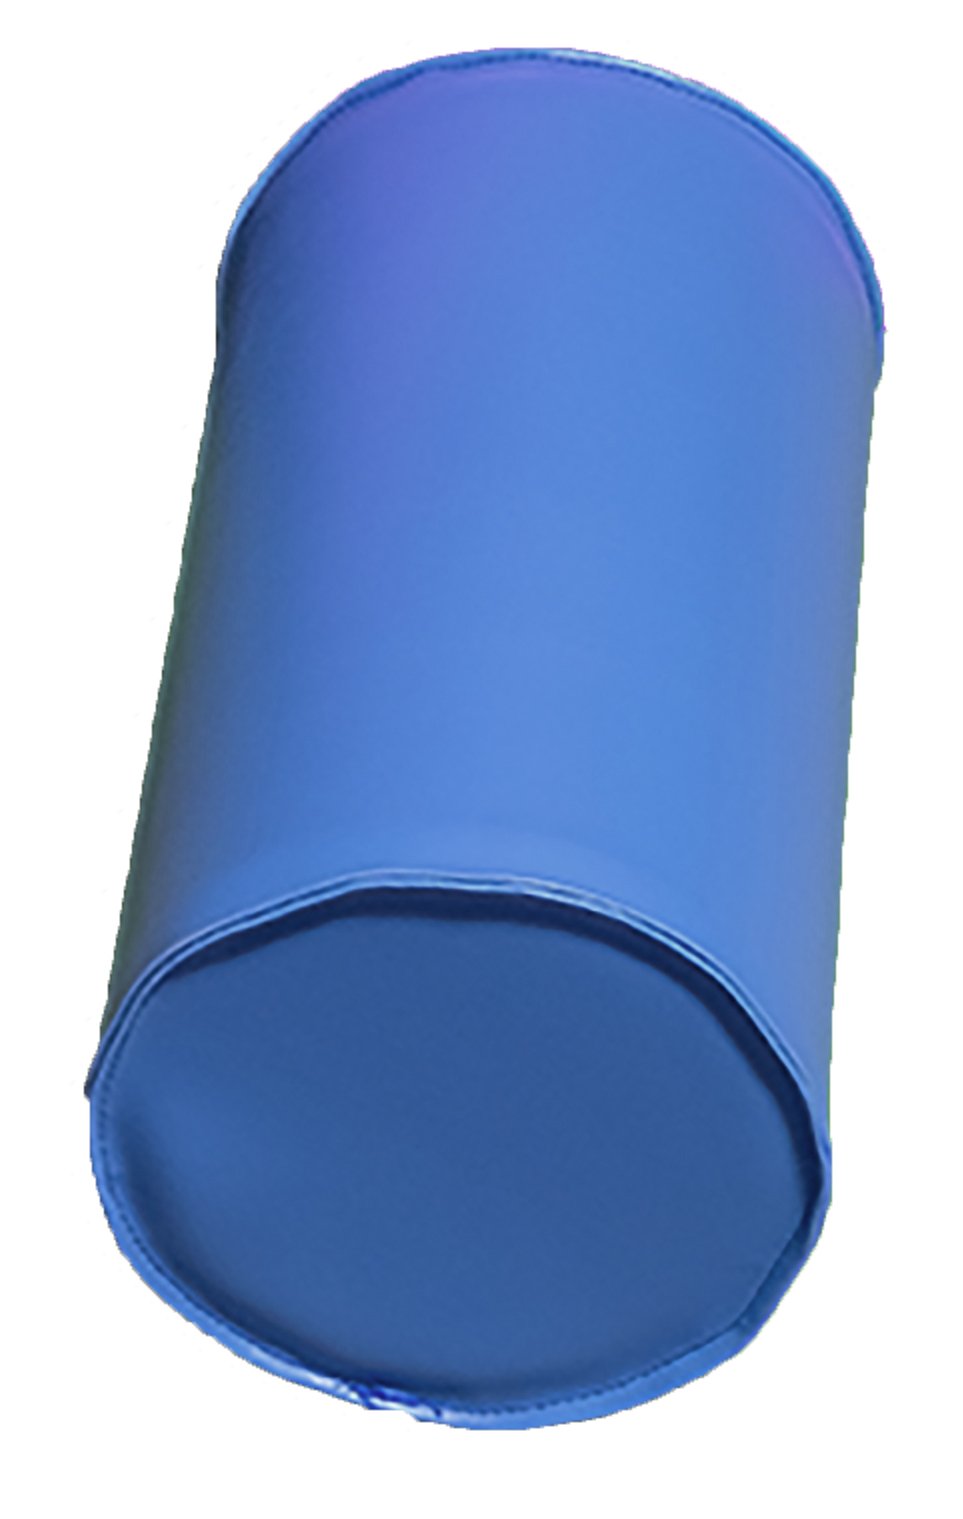 Module cylindre en mousse diam 25cm bleu